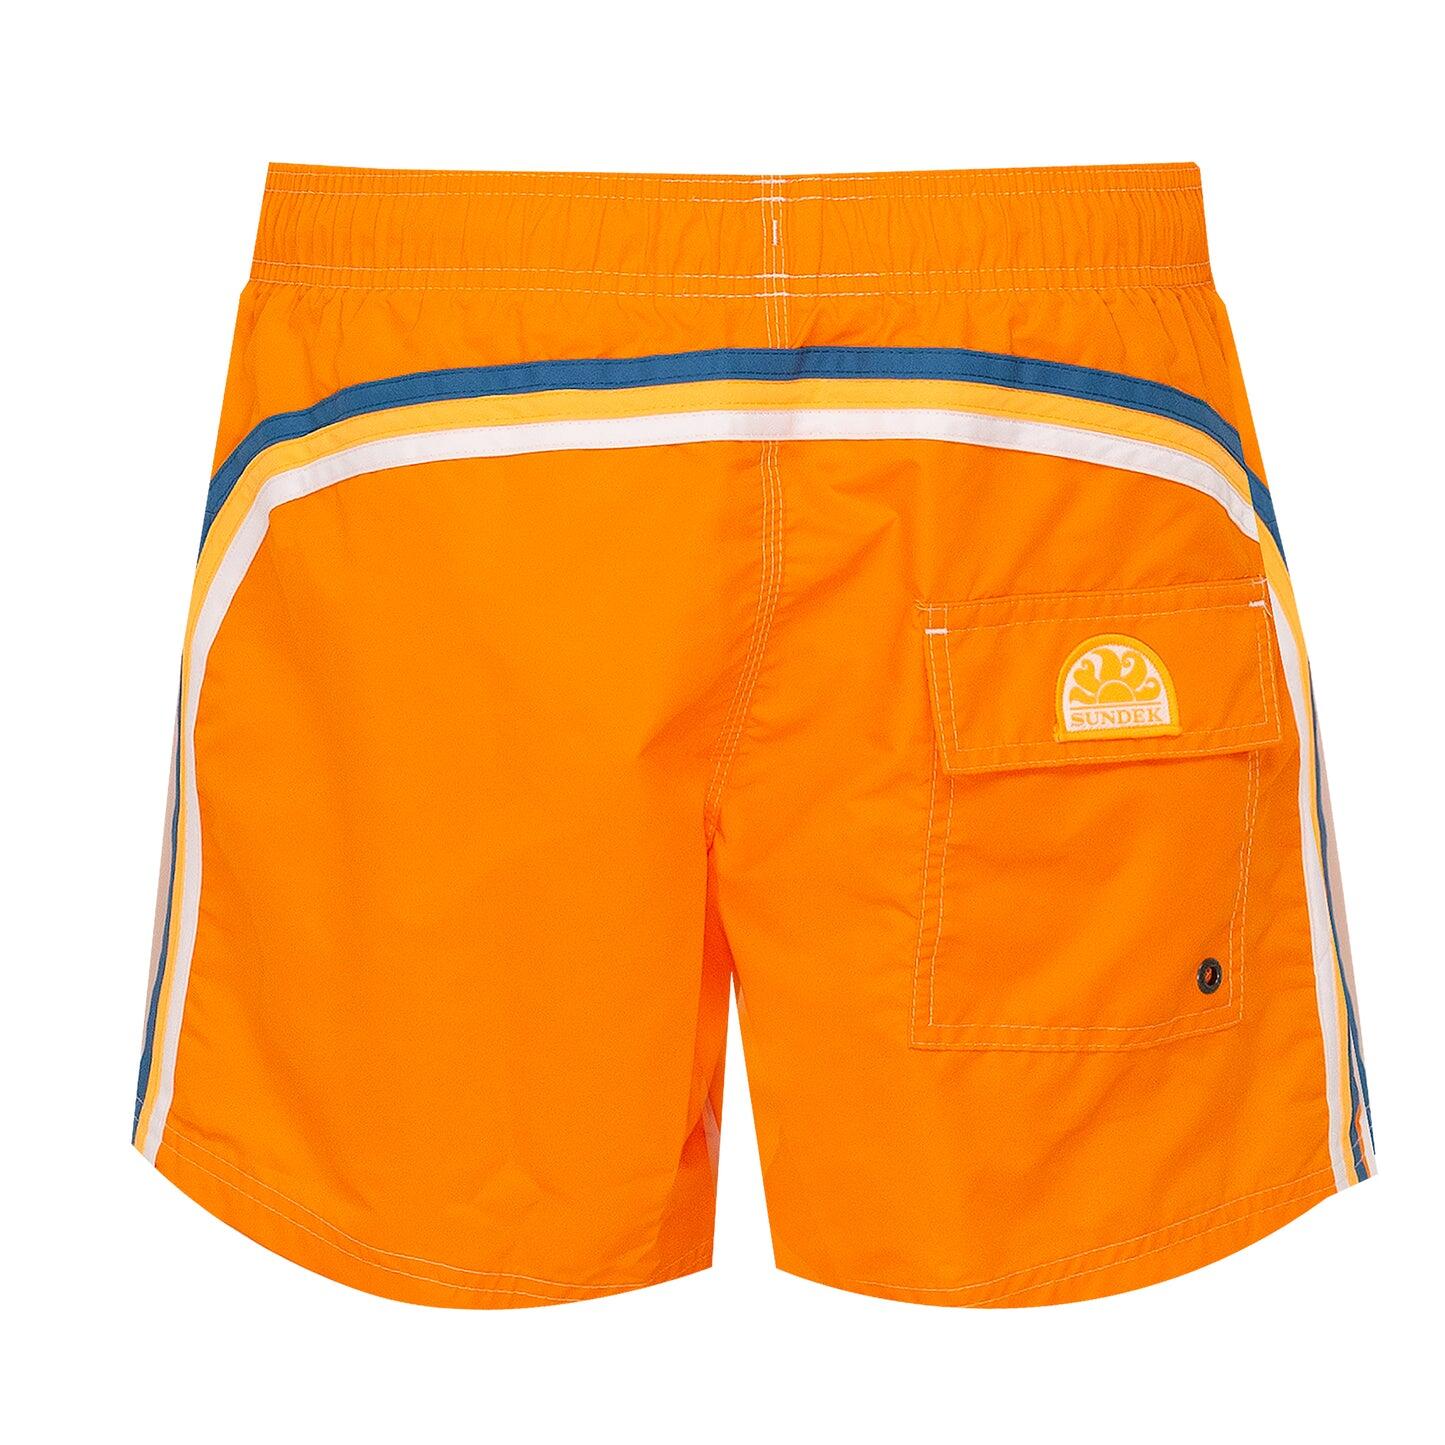 Sundek Orange Surf Shorts for Men